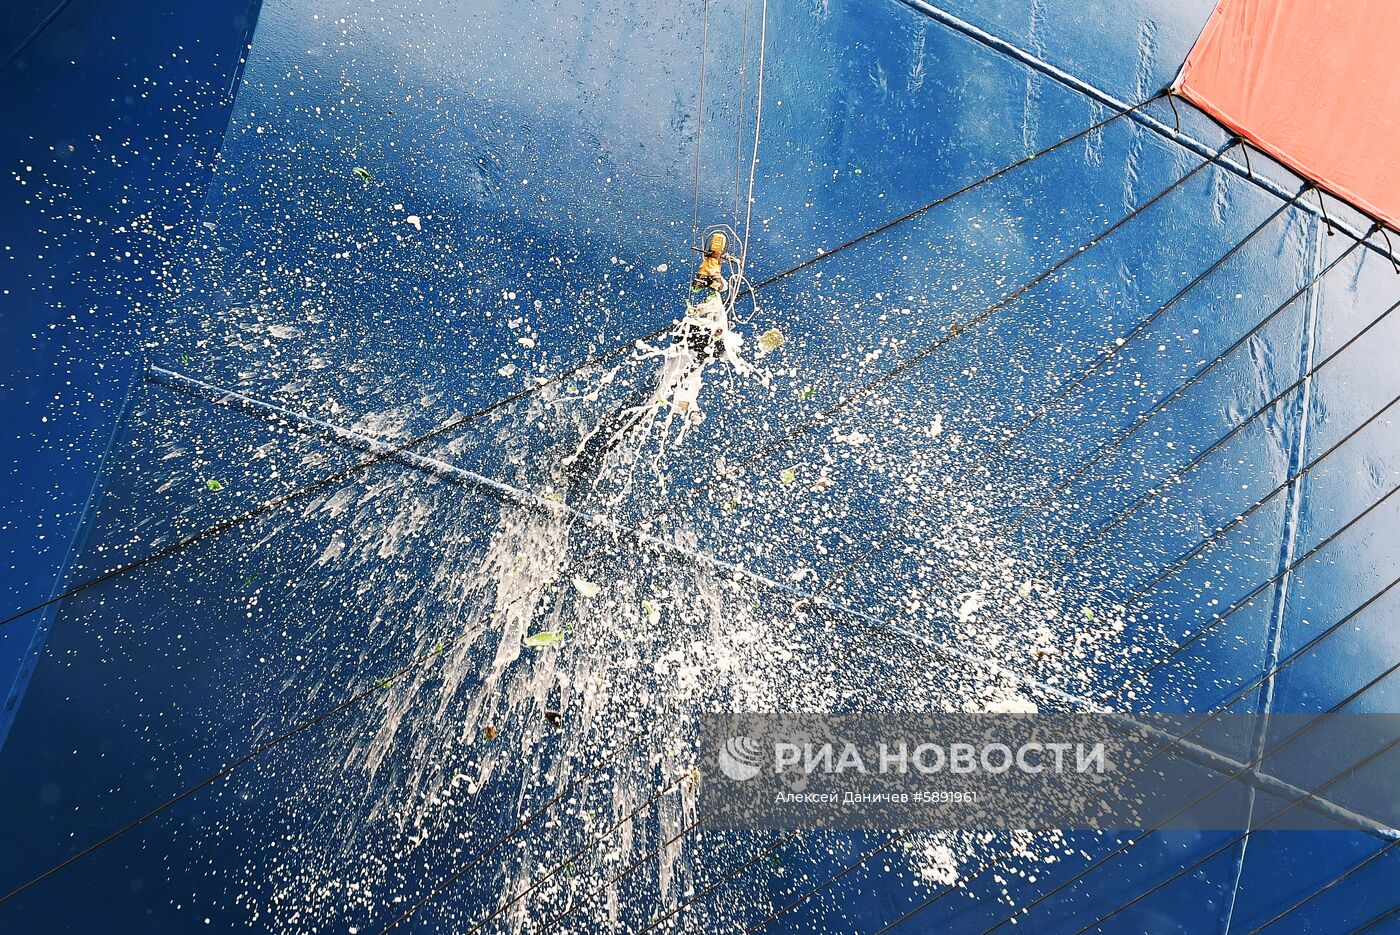 Спуск на воду атомного ледокола "Урал" в Санкт-Петербурге